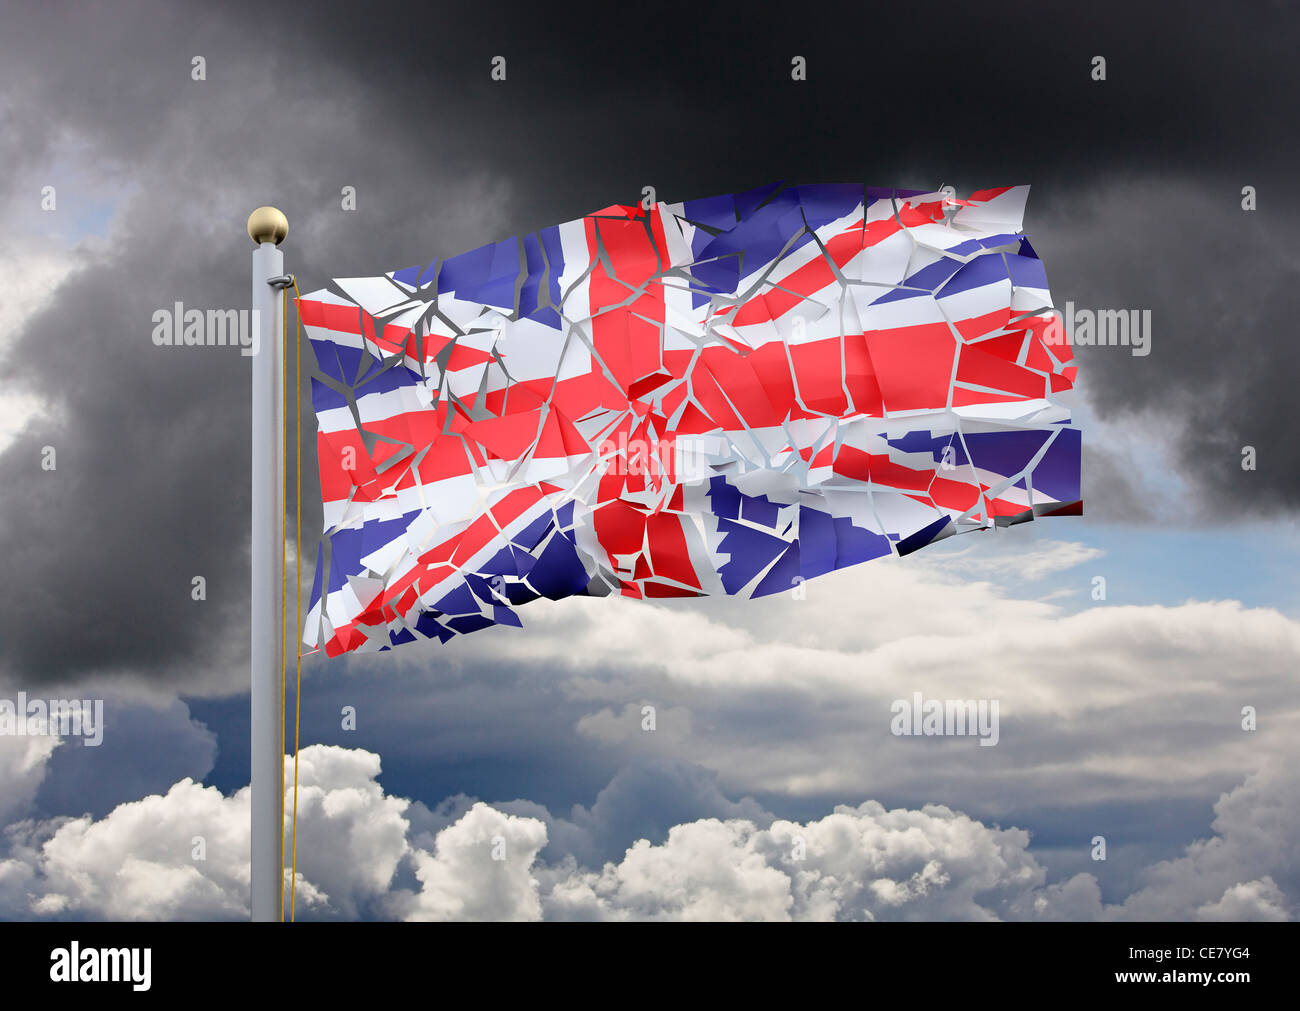 Union Jack Cracking Up - geteiltes Land / Division / Britische Probleme / Probleme / Scottish Independence / Broken Britain Konzeptkonzepte Stockfoto